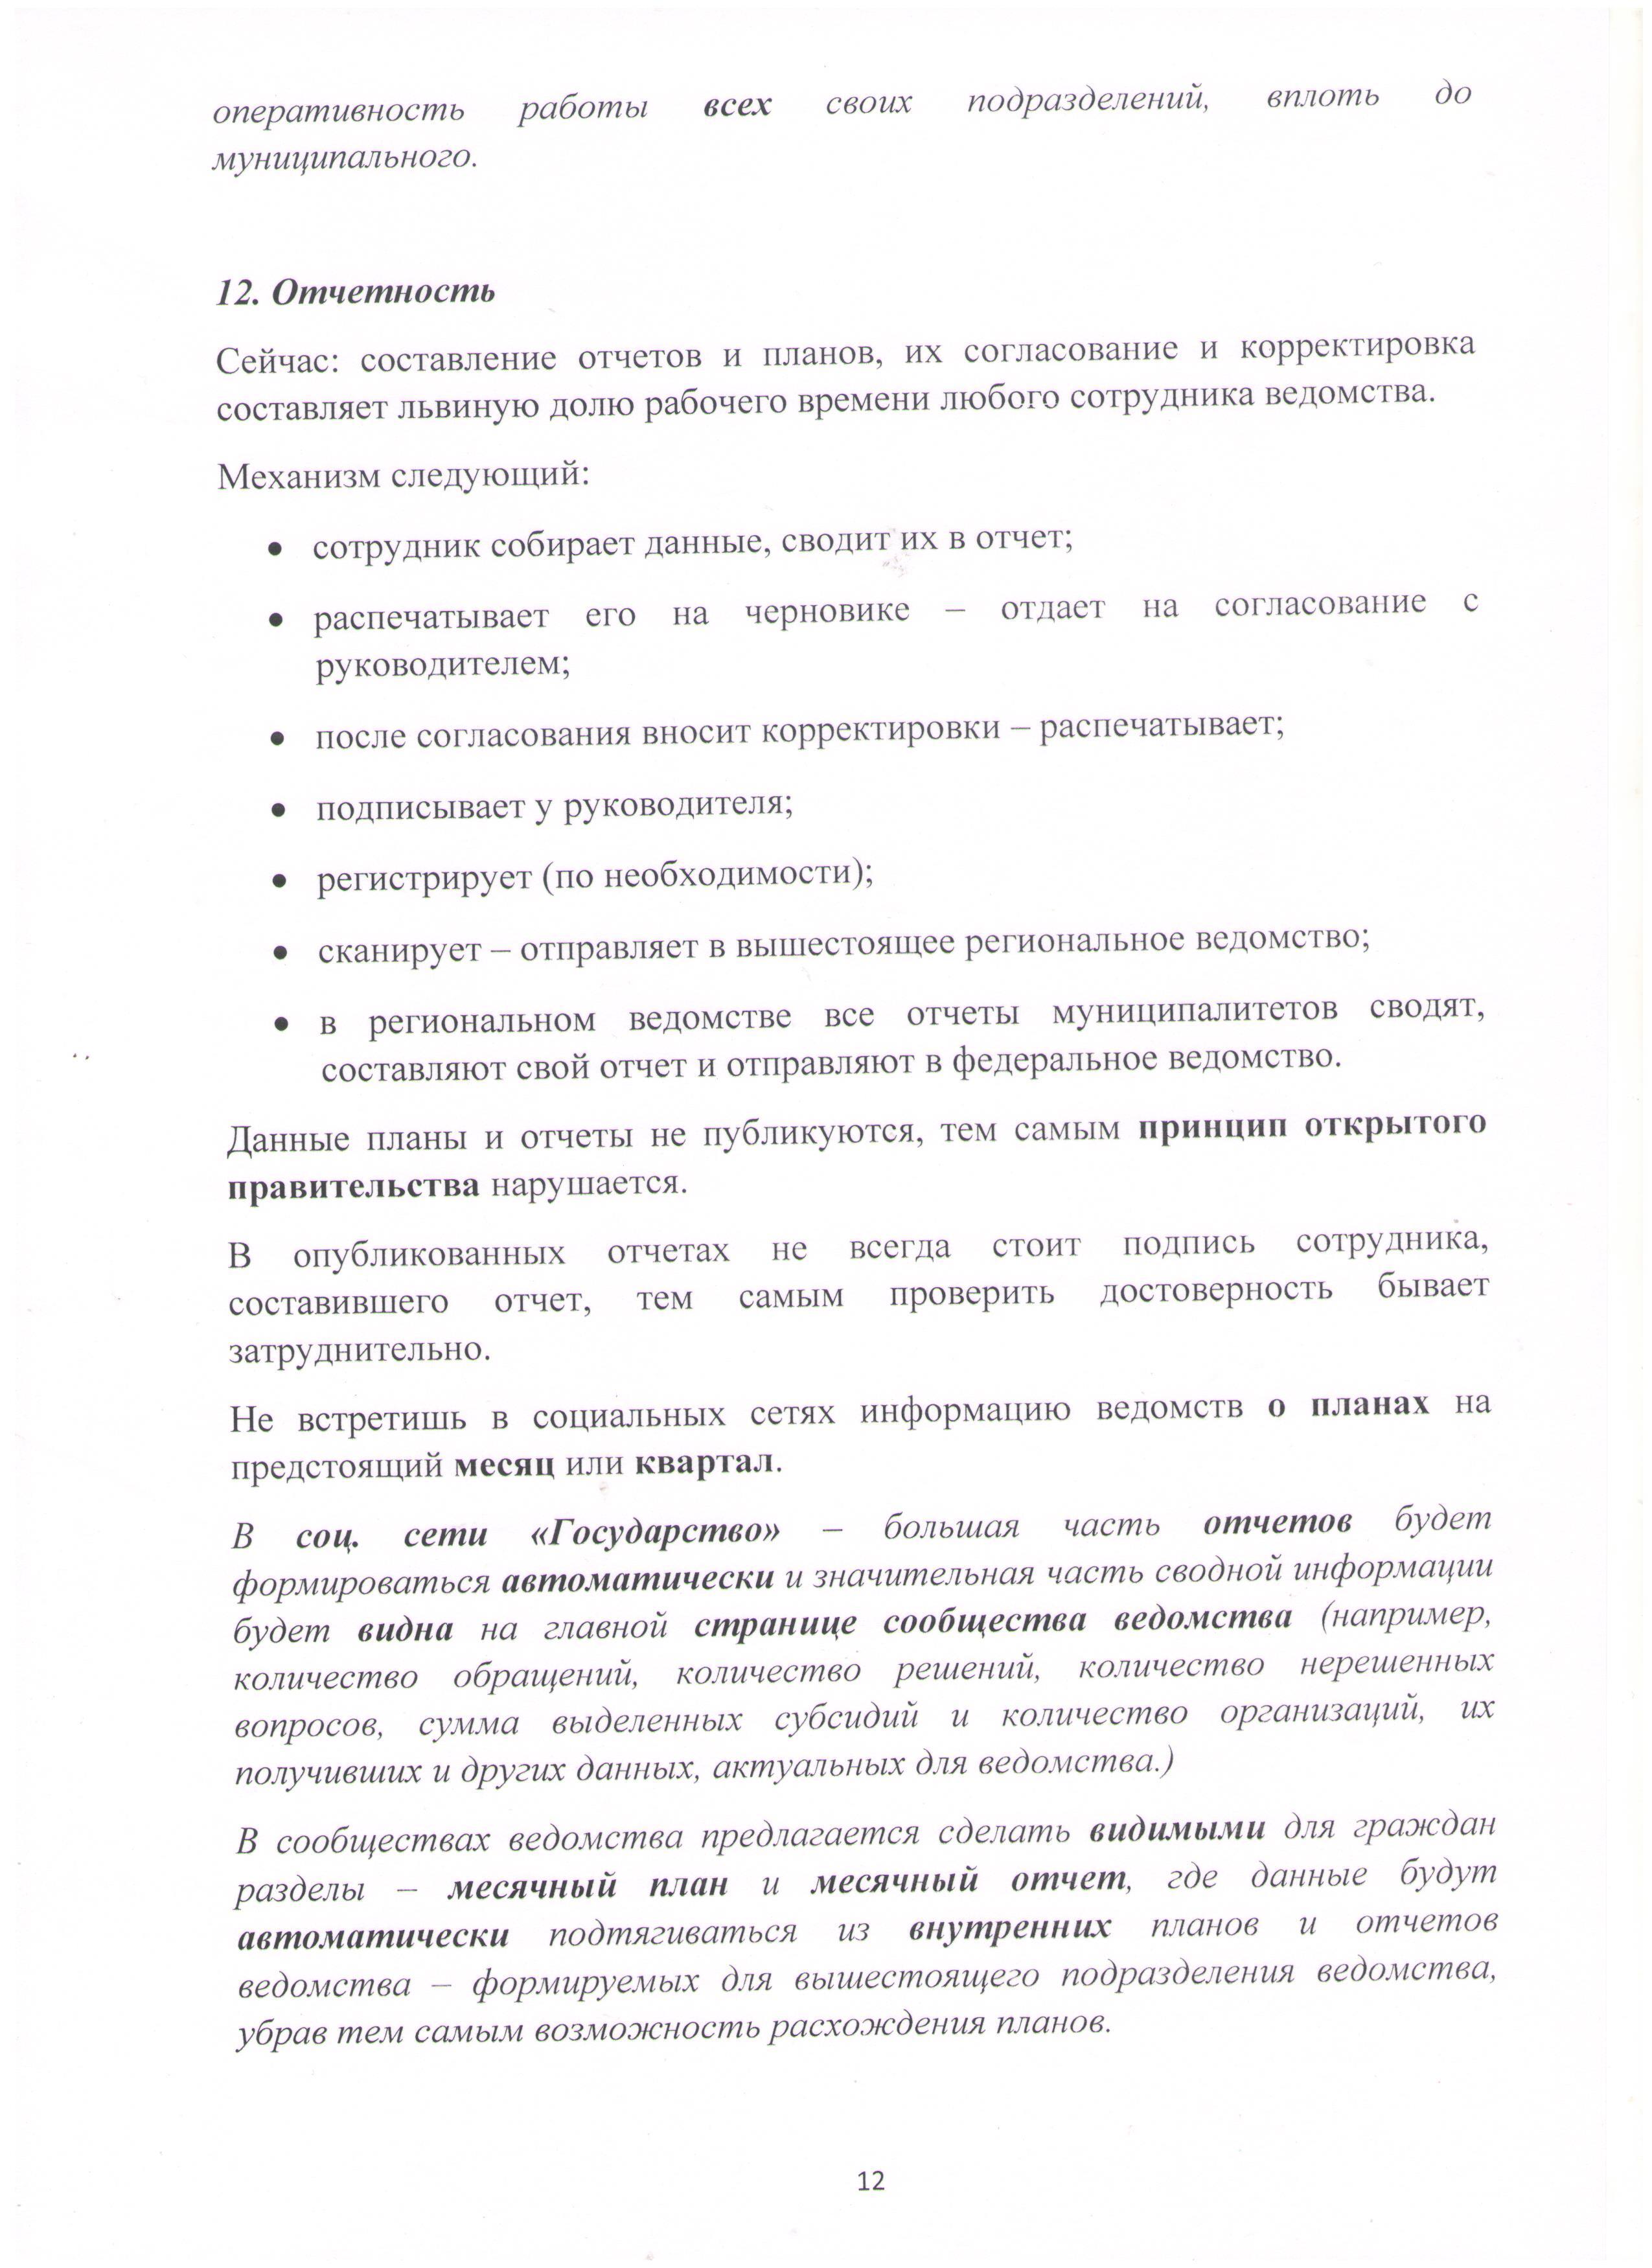 Открытое письмо Президенту РФ Лист 12